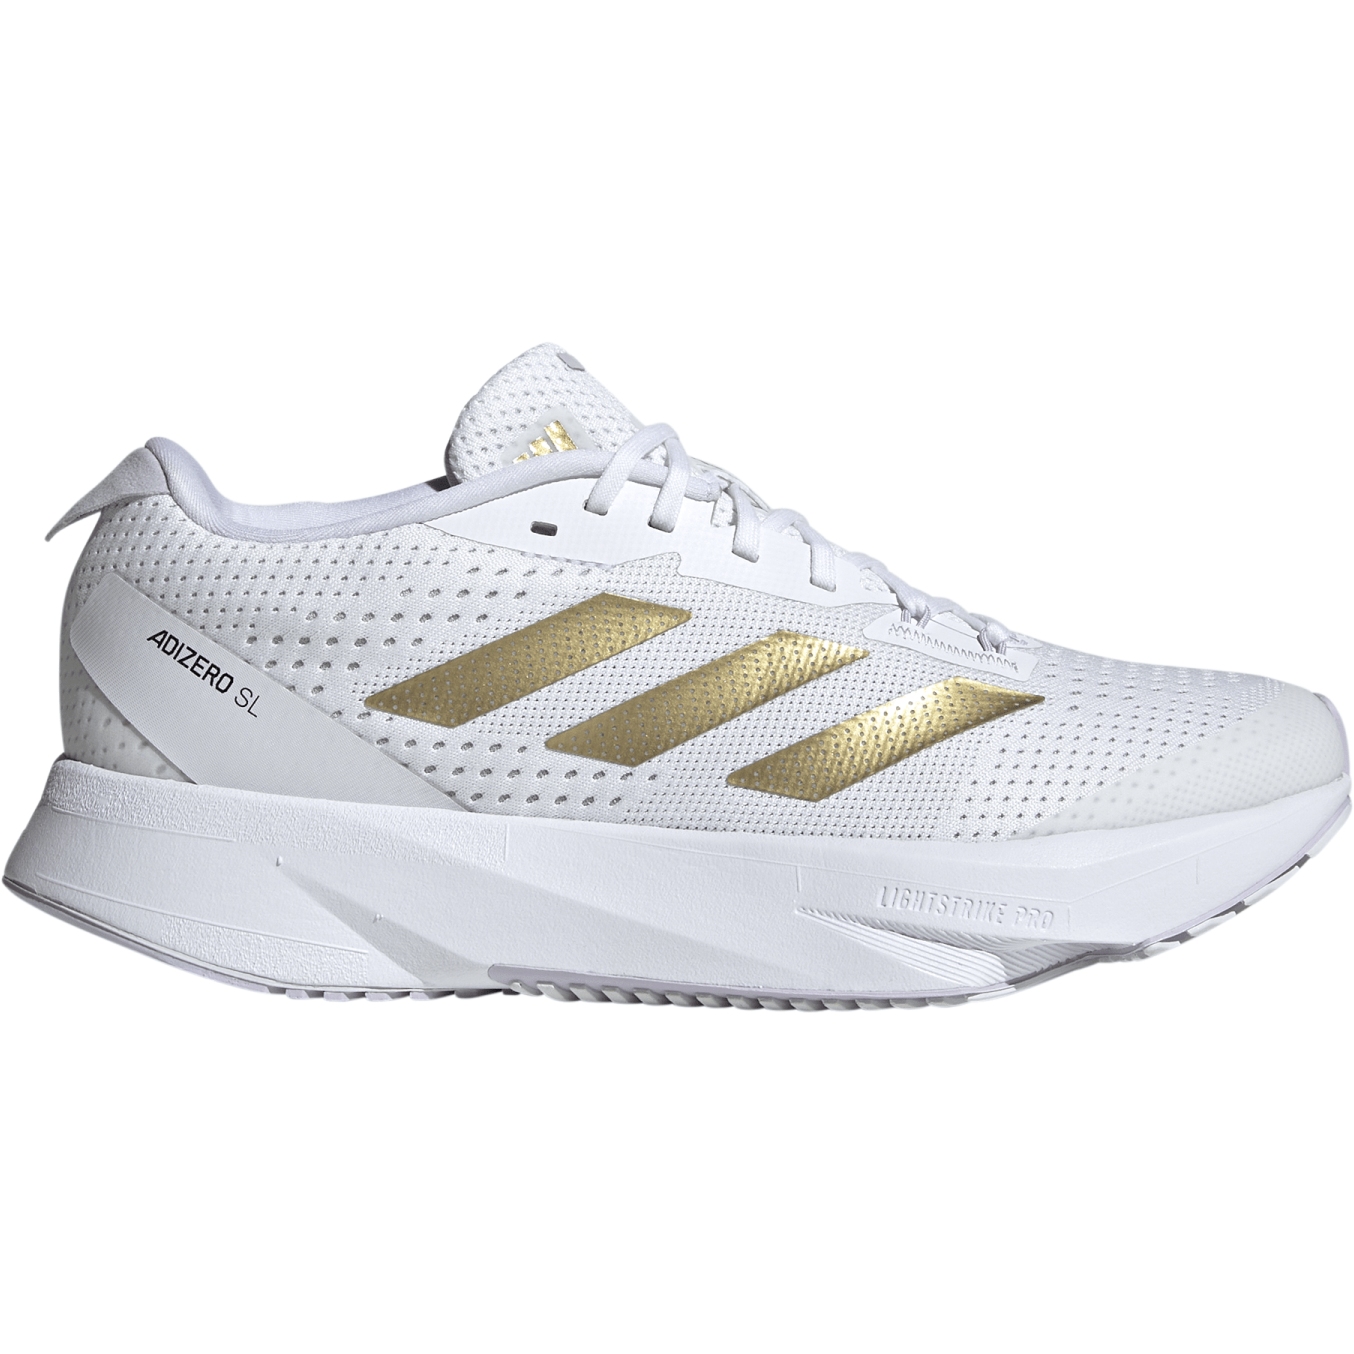 Produktbild von adidas Adizero Superlight Laufschuhe Damen - white/gold metal/dash grey ID6934